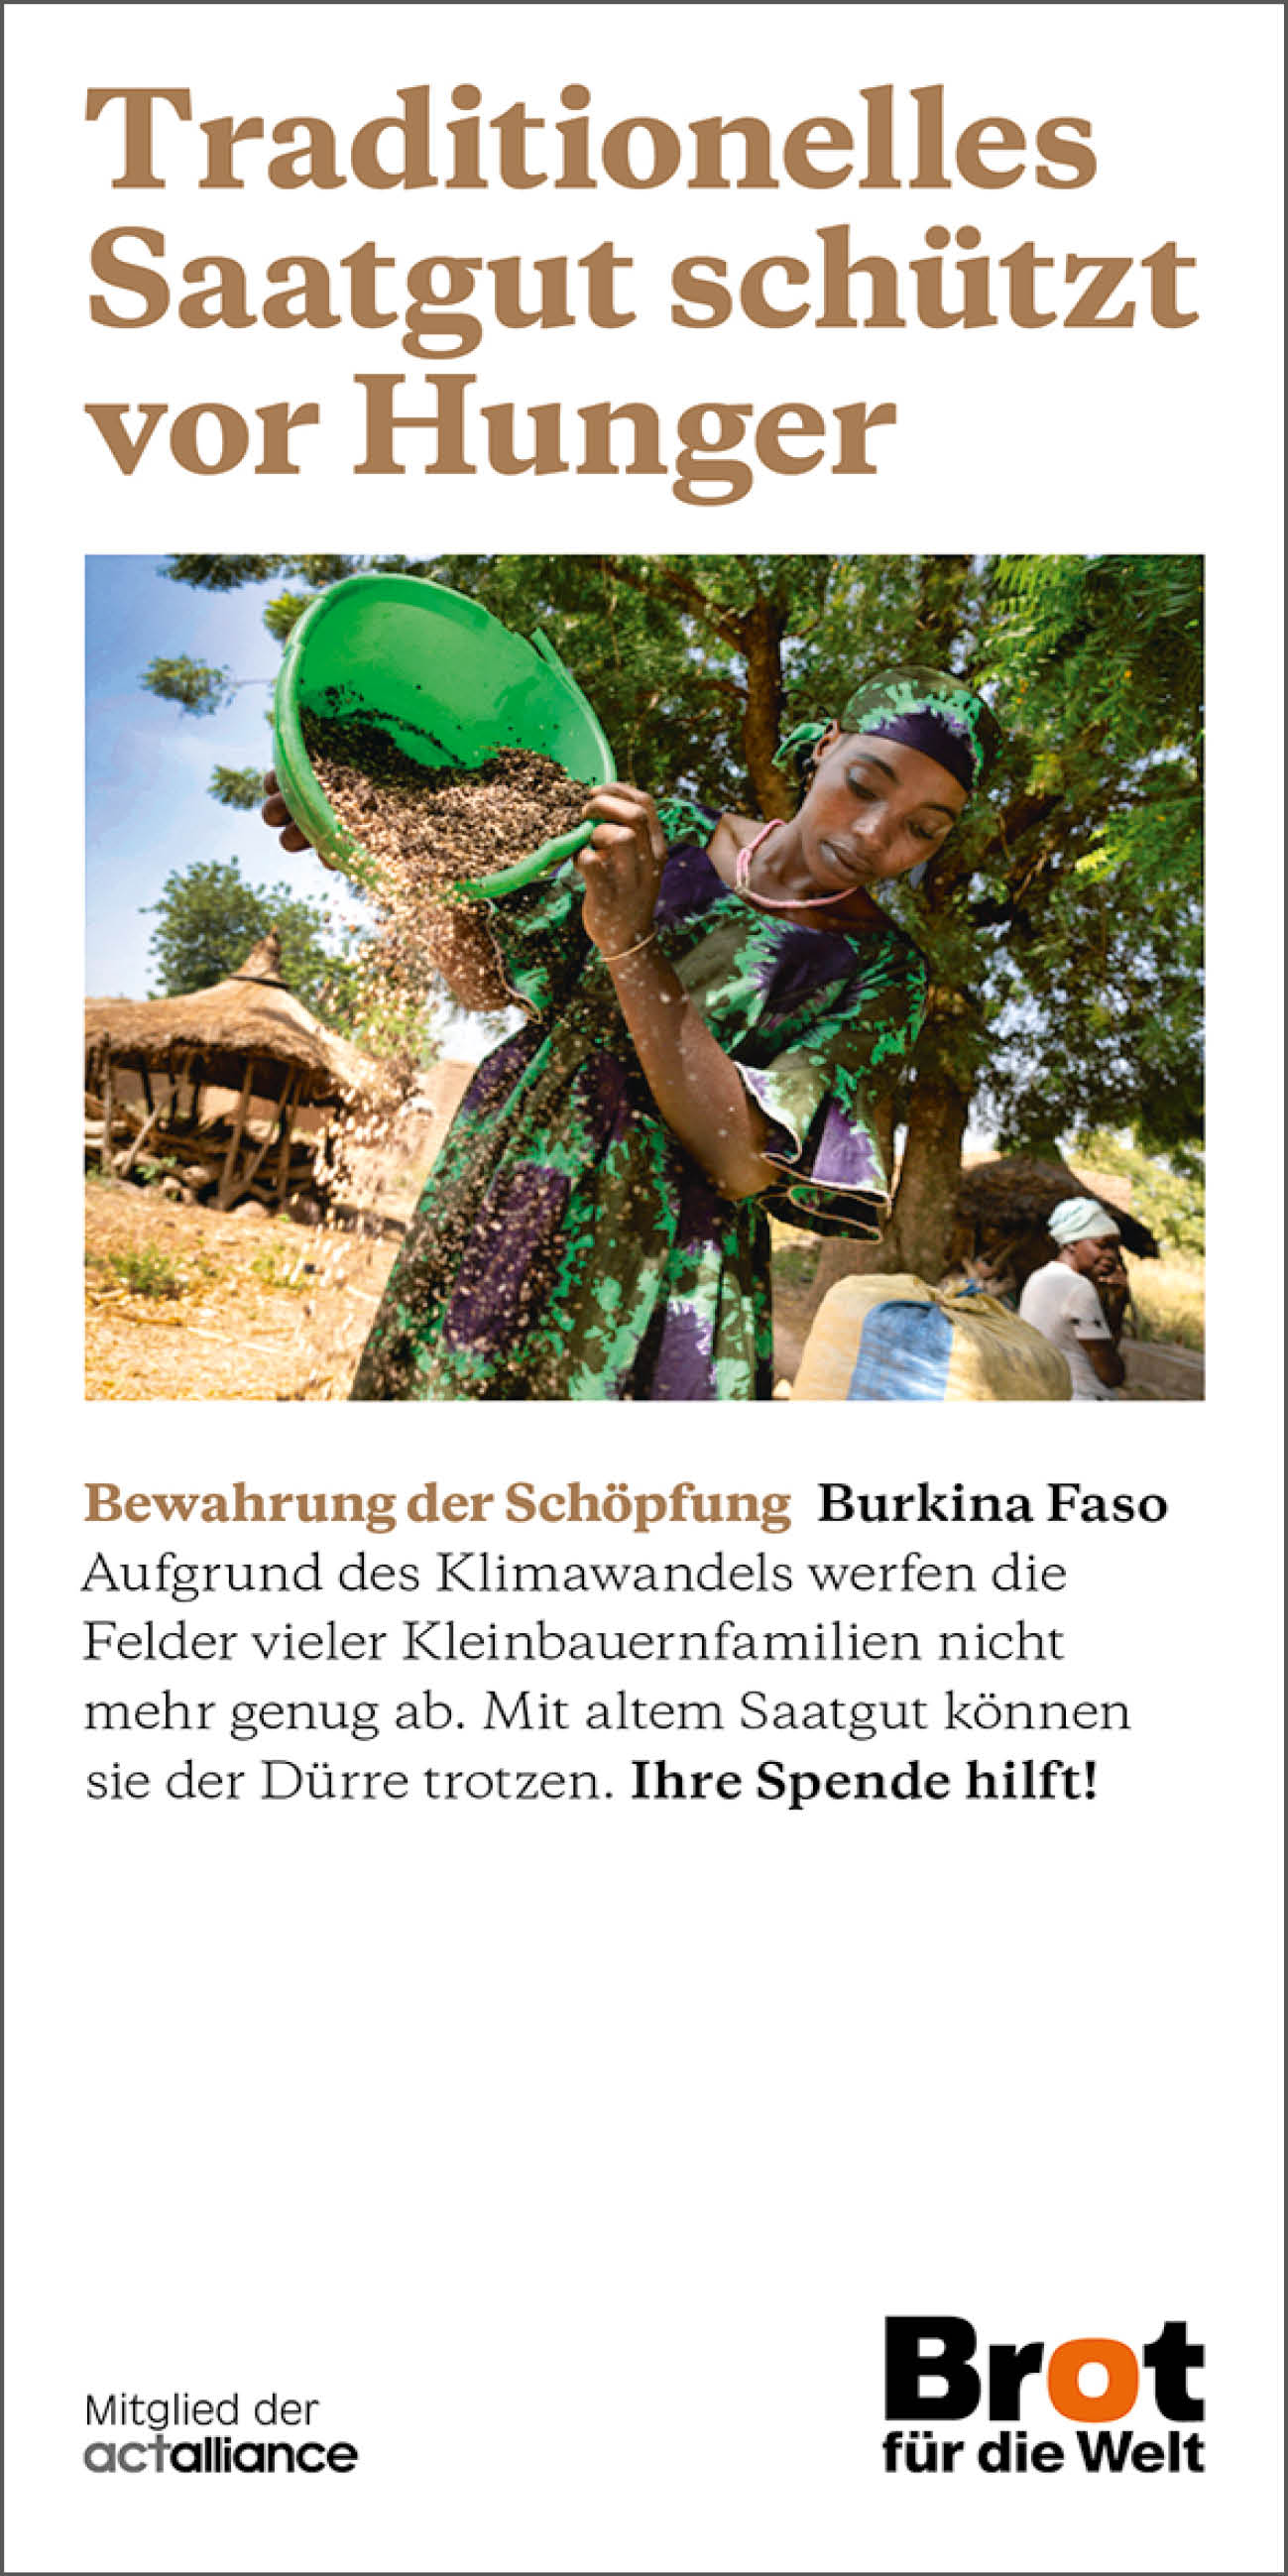 Burkina Faso - Traditionelles Saatgut schützt vor Hunger (Faltblatt Bewahrung der Schöpfung)